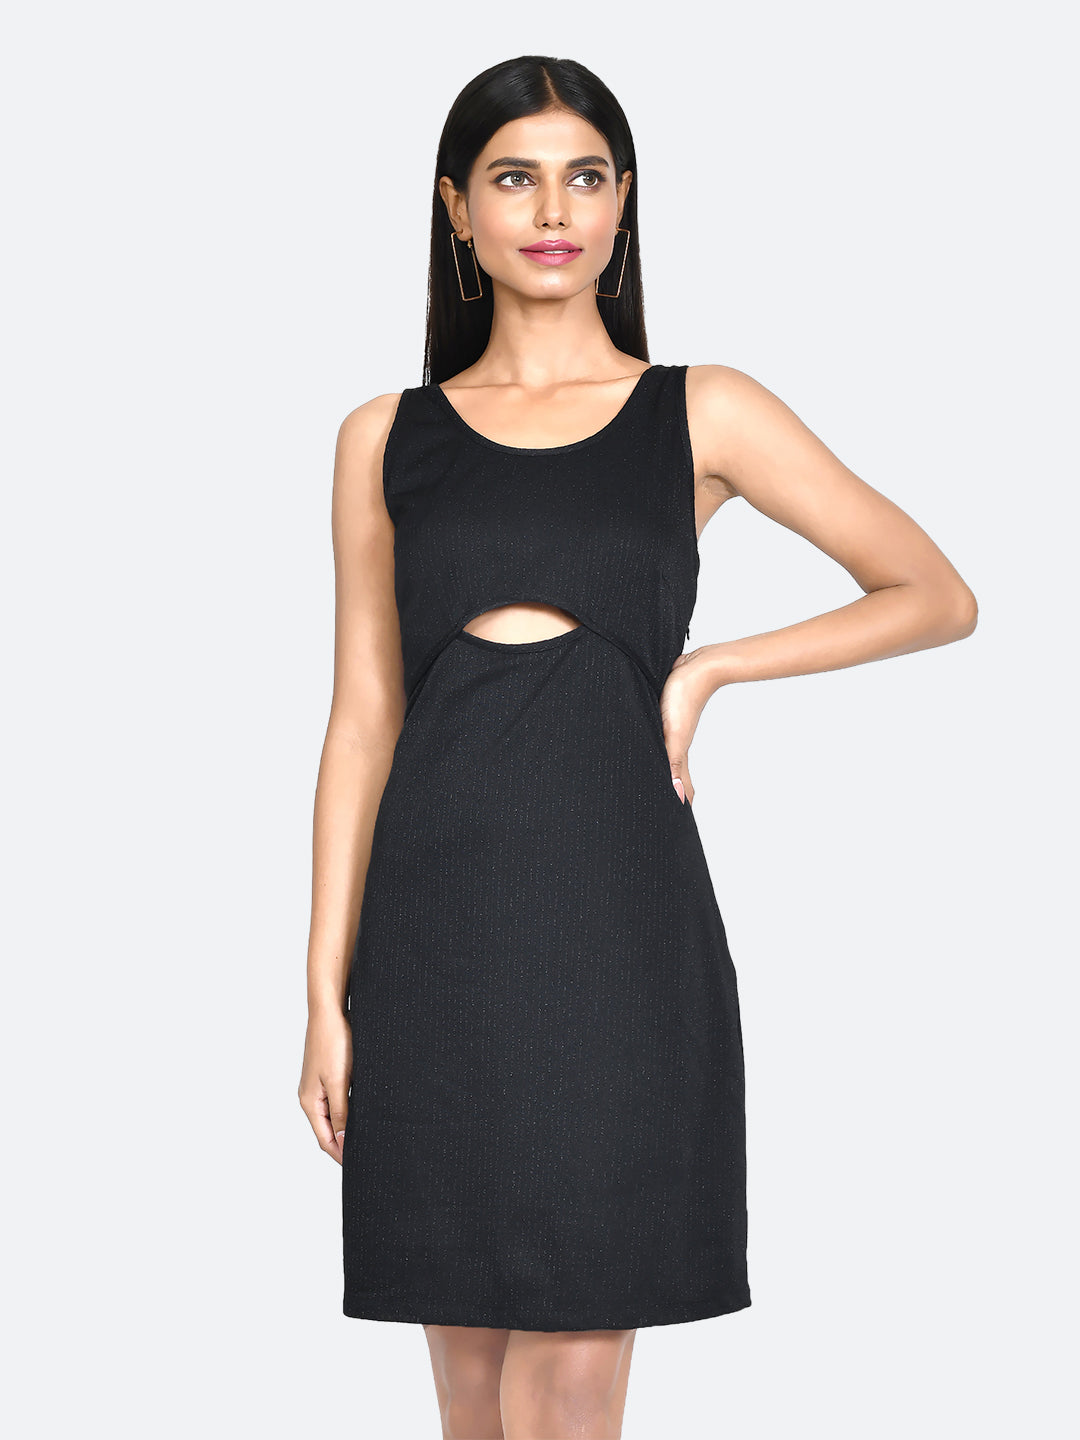 Black Embellished Cut Out Short Dress For Women